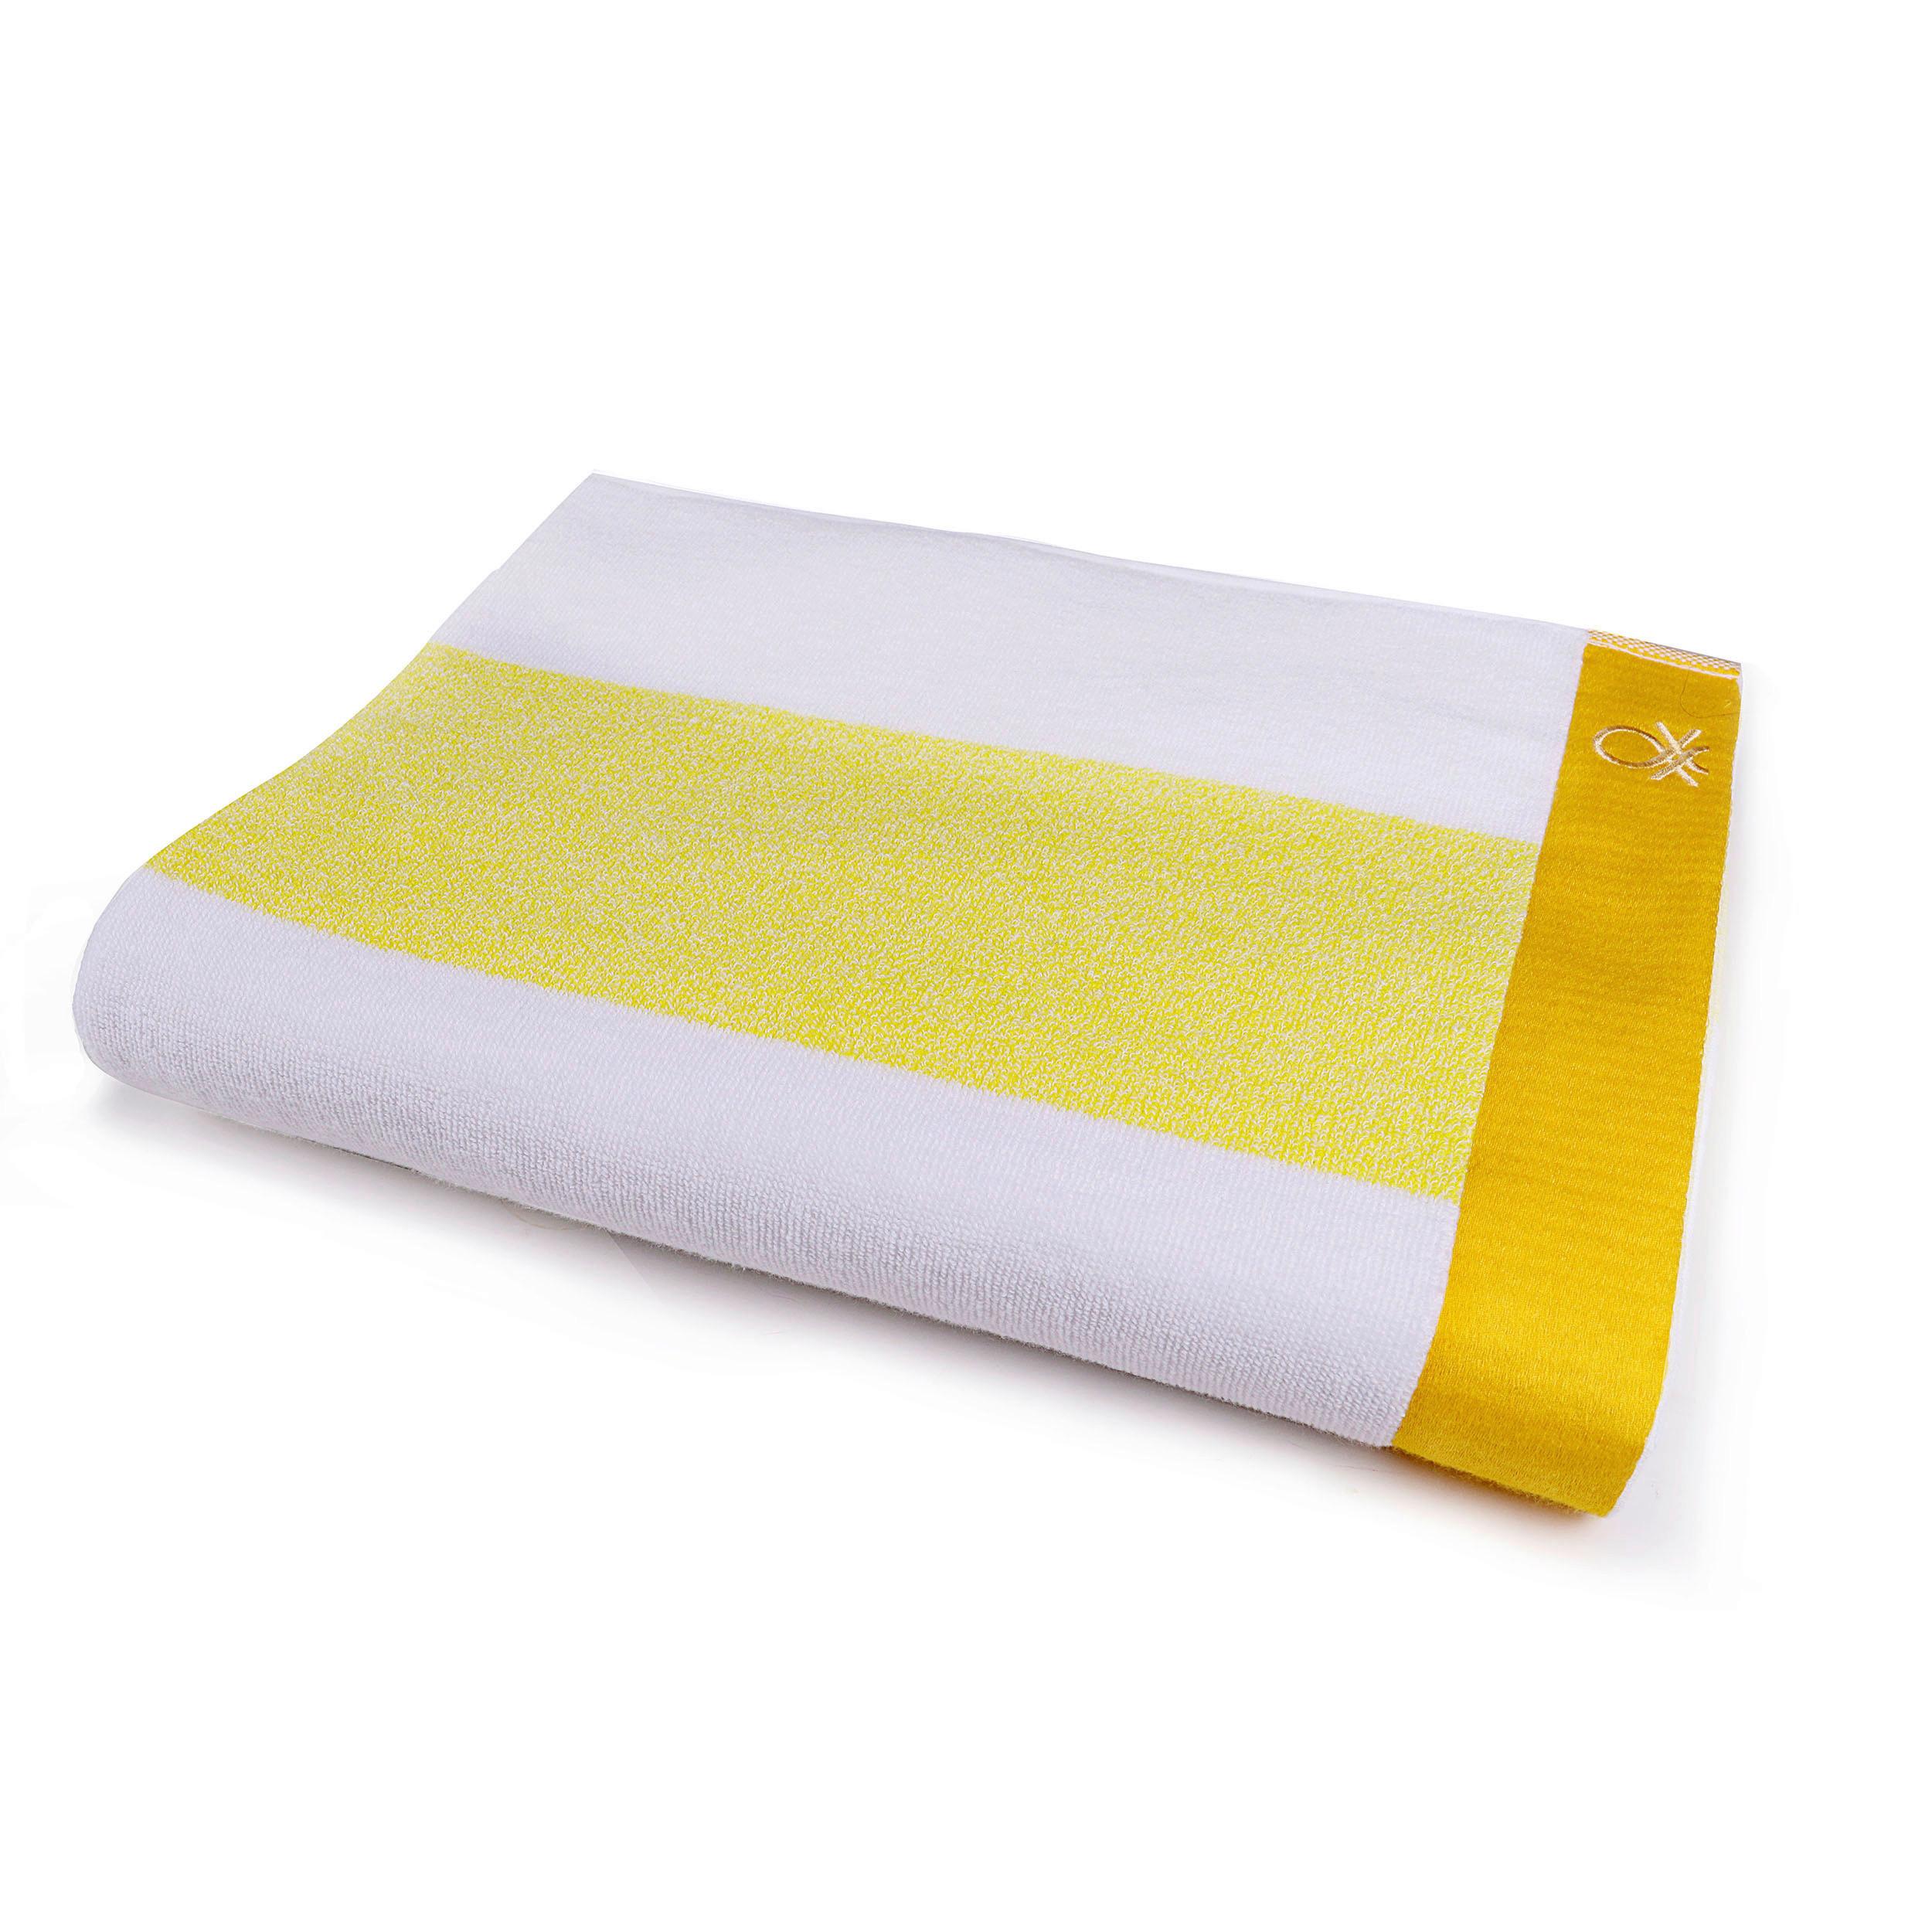 Strandtuch Baumwolle Gelb/ Weiß 90x160x1,5 cm - Gelb/Weiß, Basics, Textil (90/160cm) - Masterpro